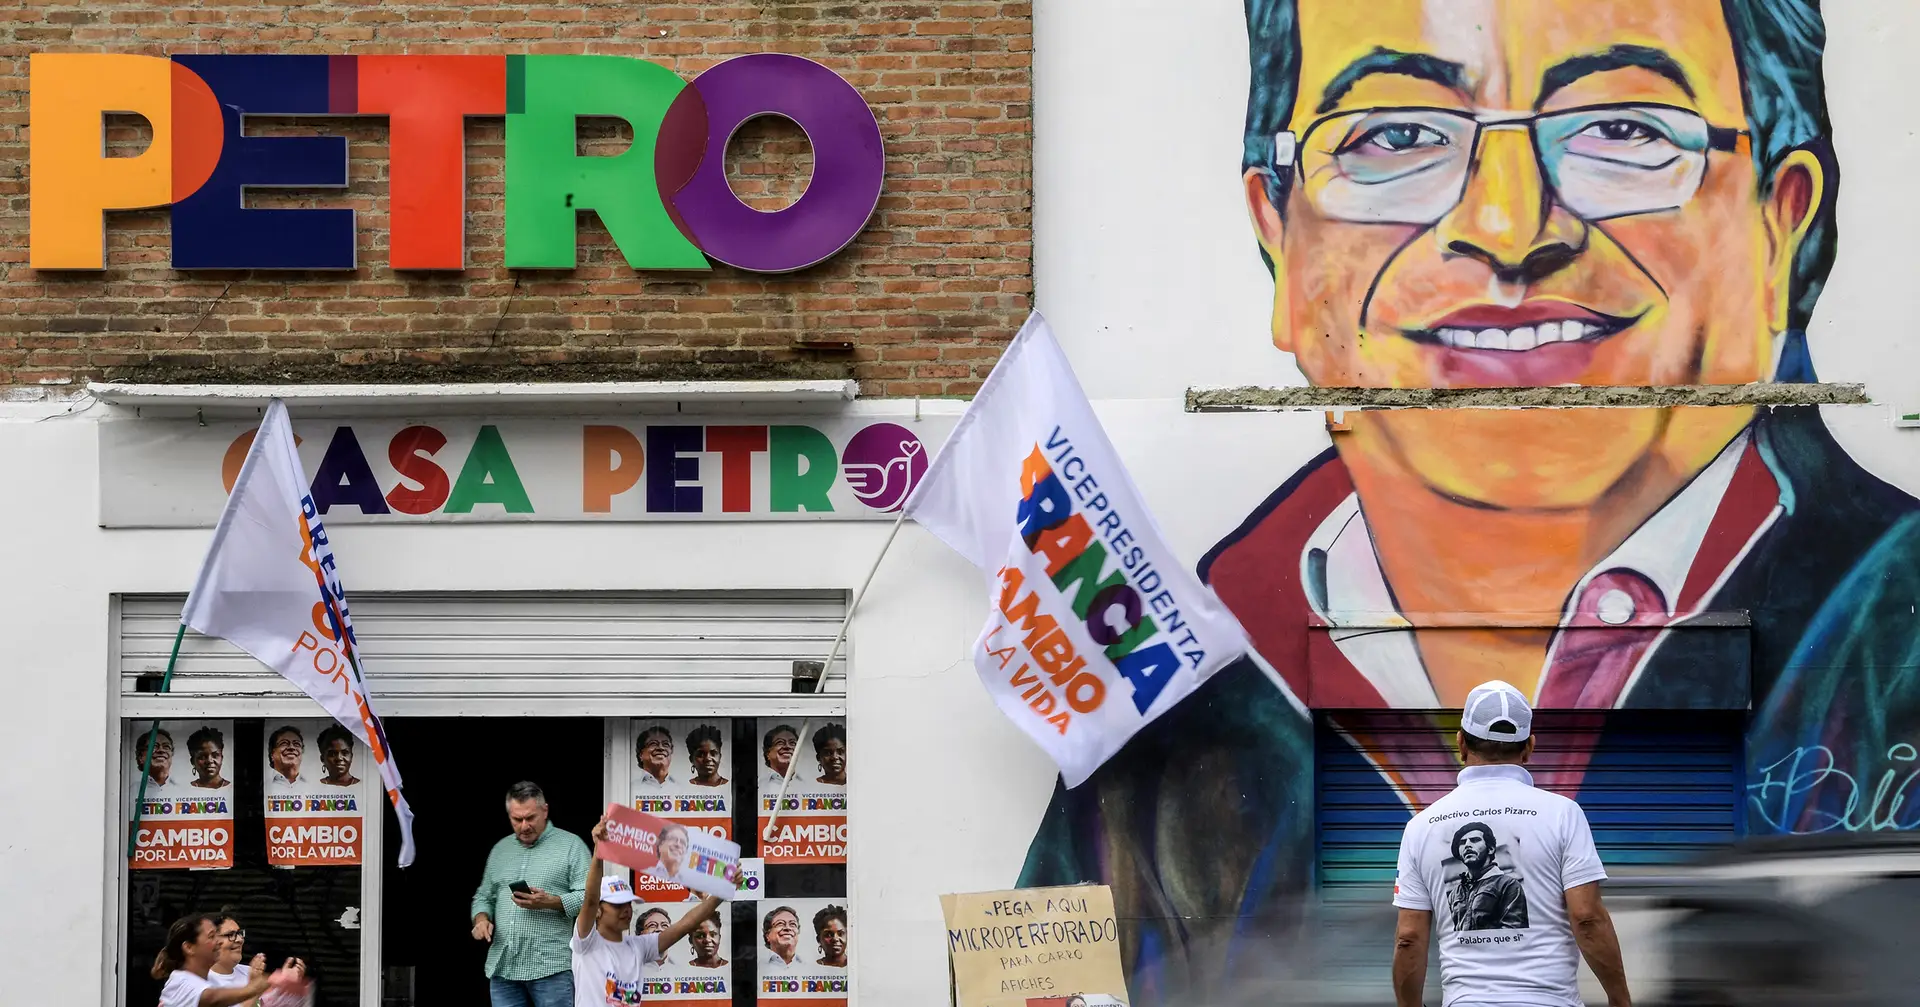 Eleições presidenciais na Colômbia. Em quem arriscar para castigar o poder?